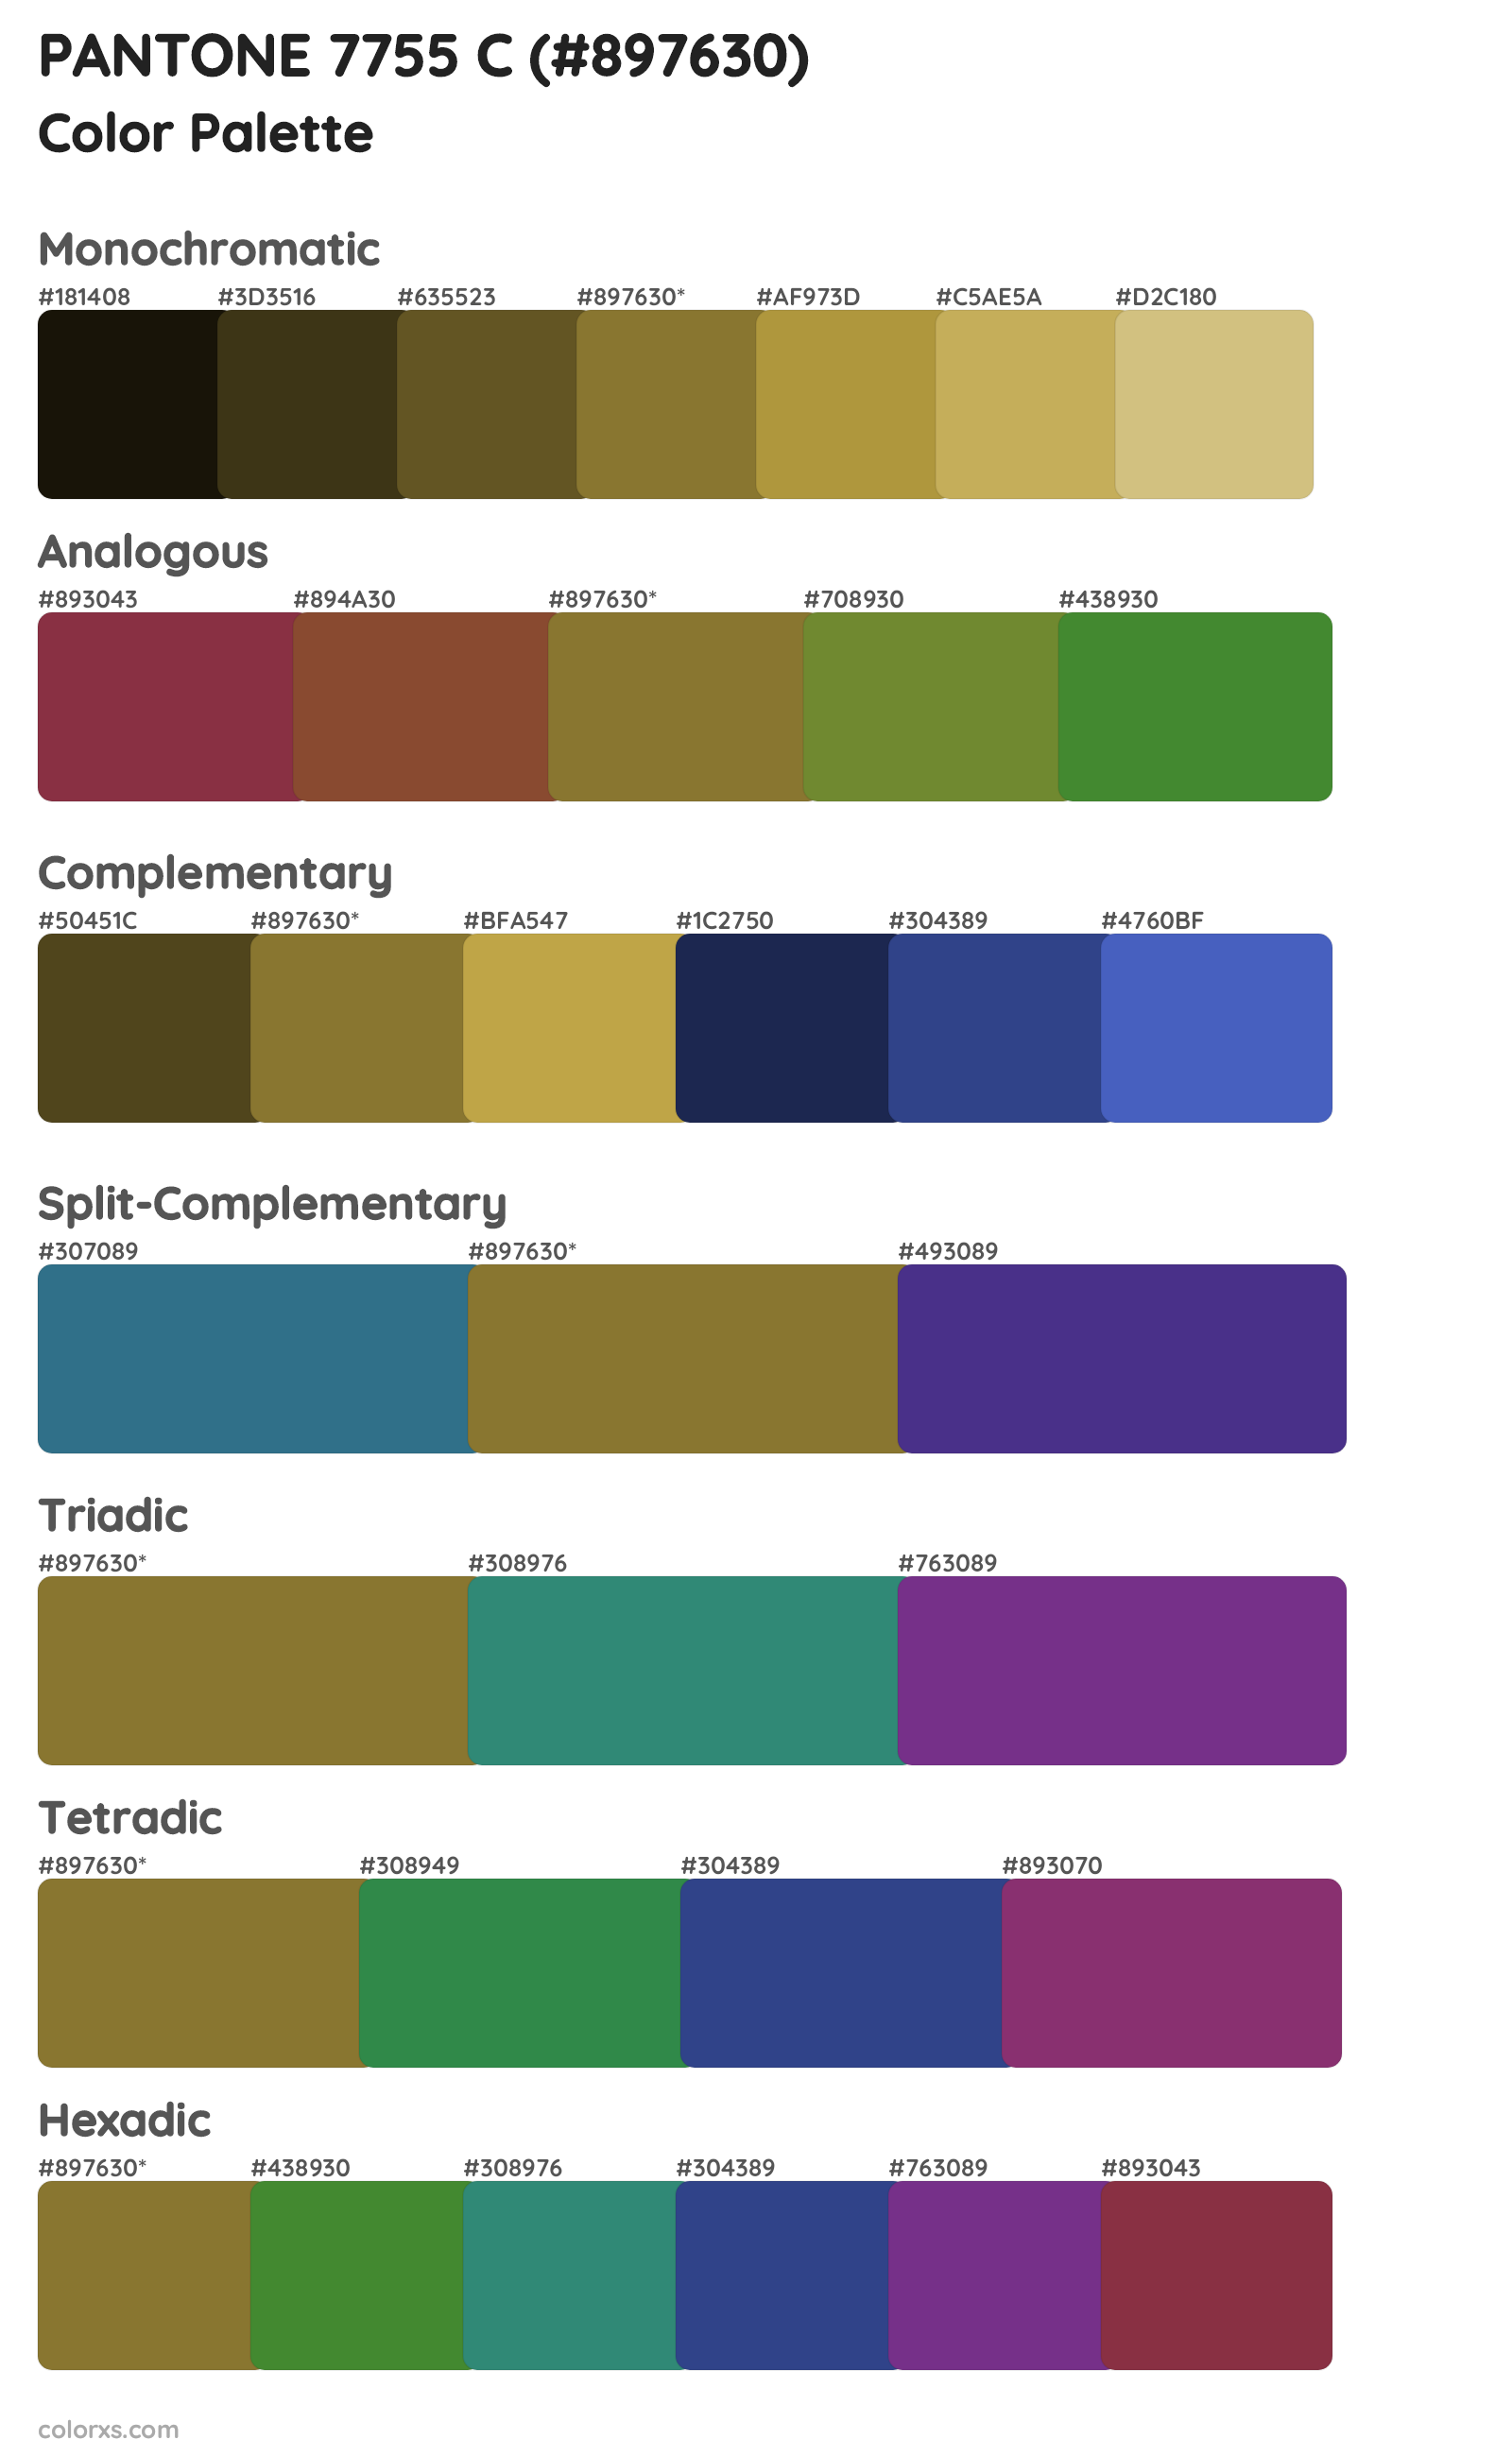 PANTONE 7755 C Color Scheme Palettes